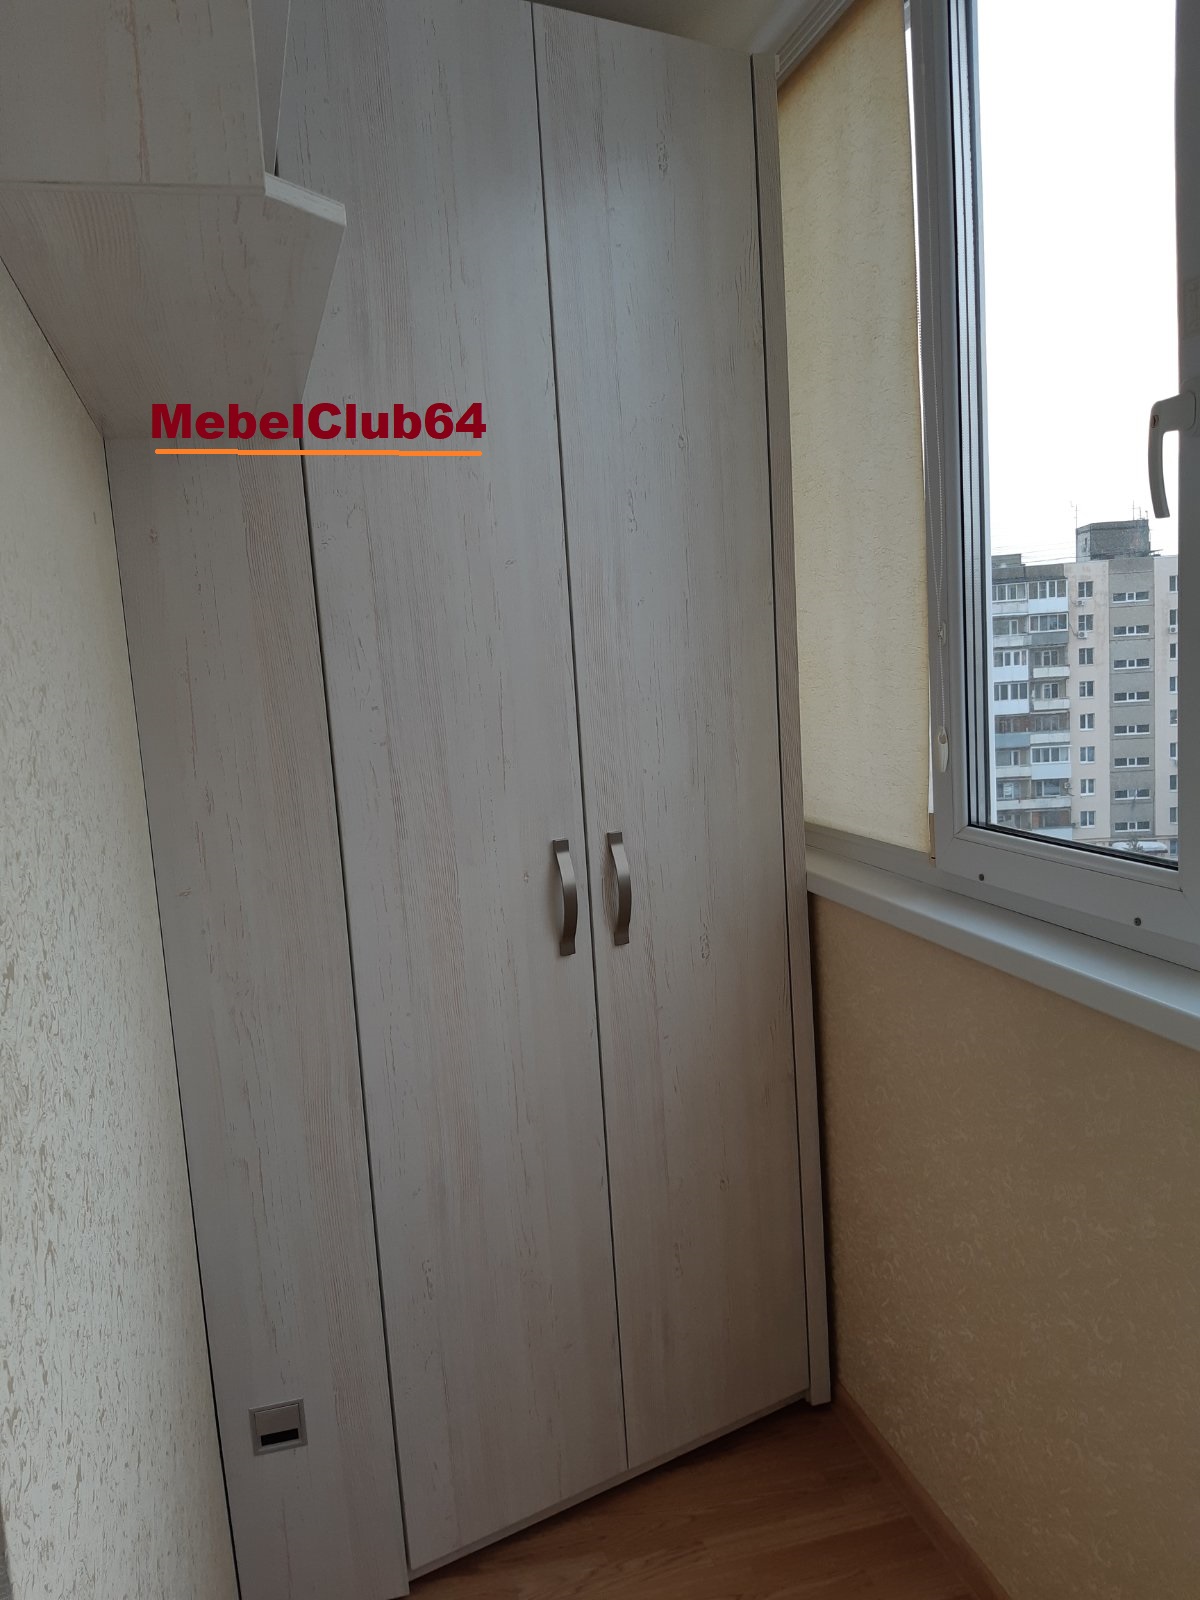 картинка Шкаф на балкон (Заказ № 13 от 29.01.22) от сети мебельных салонов MebelClub